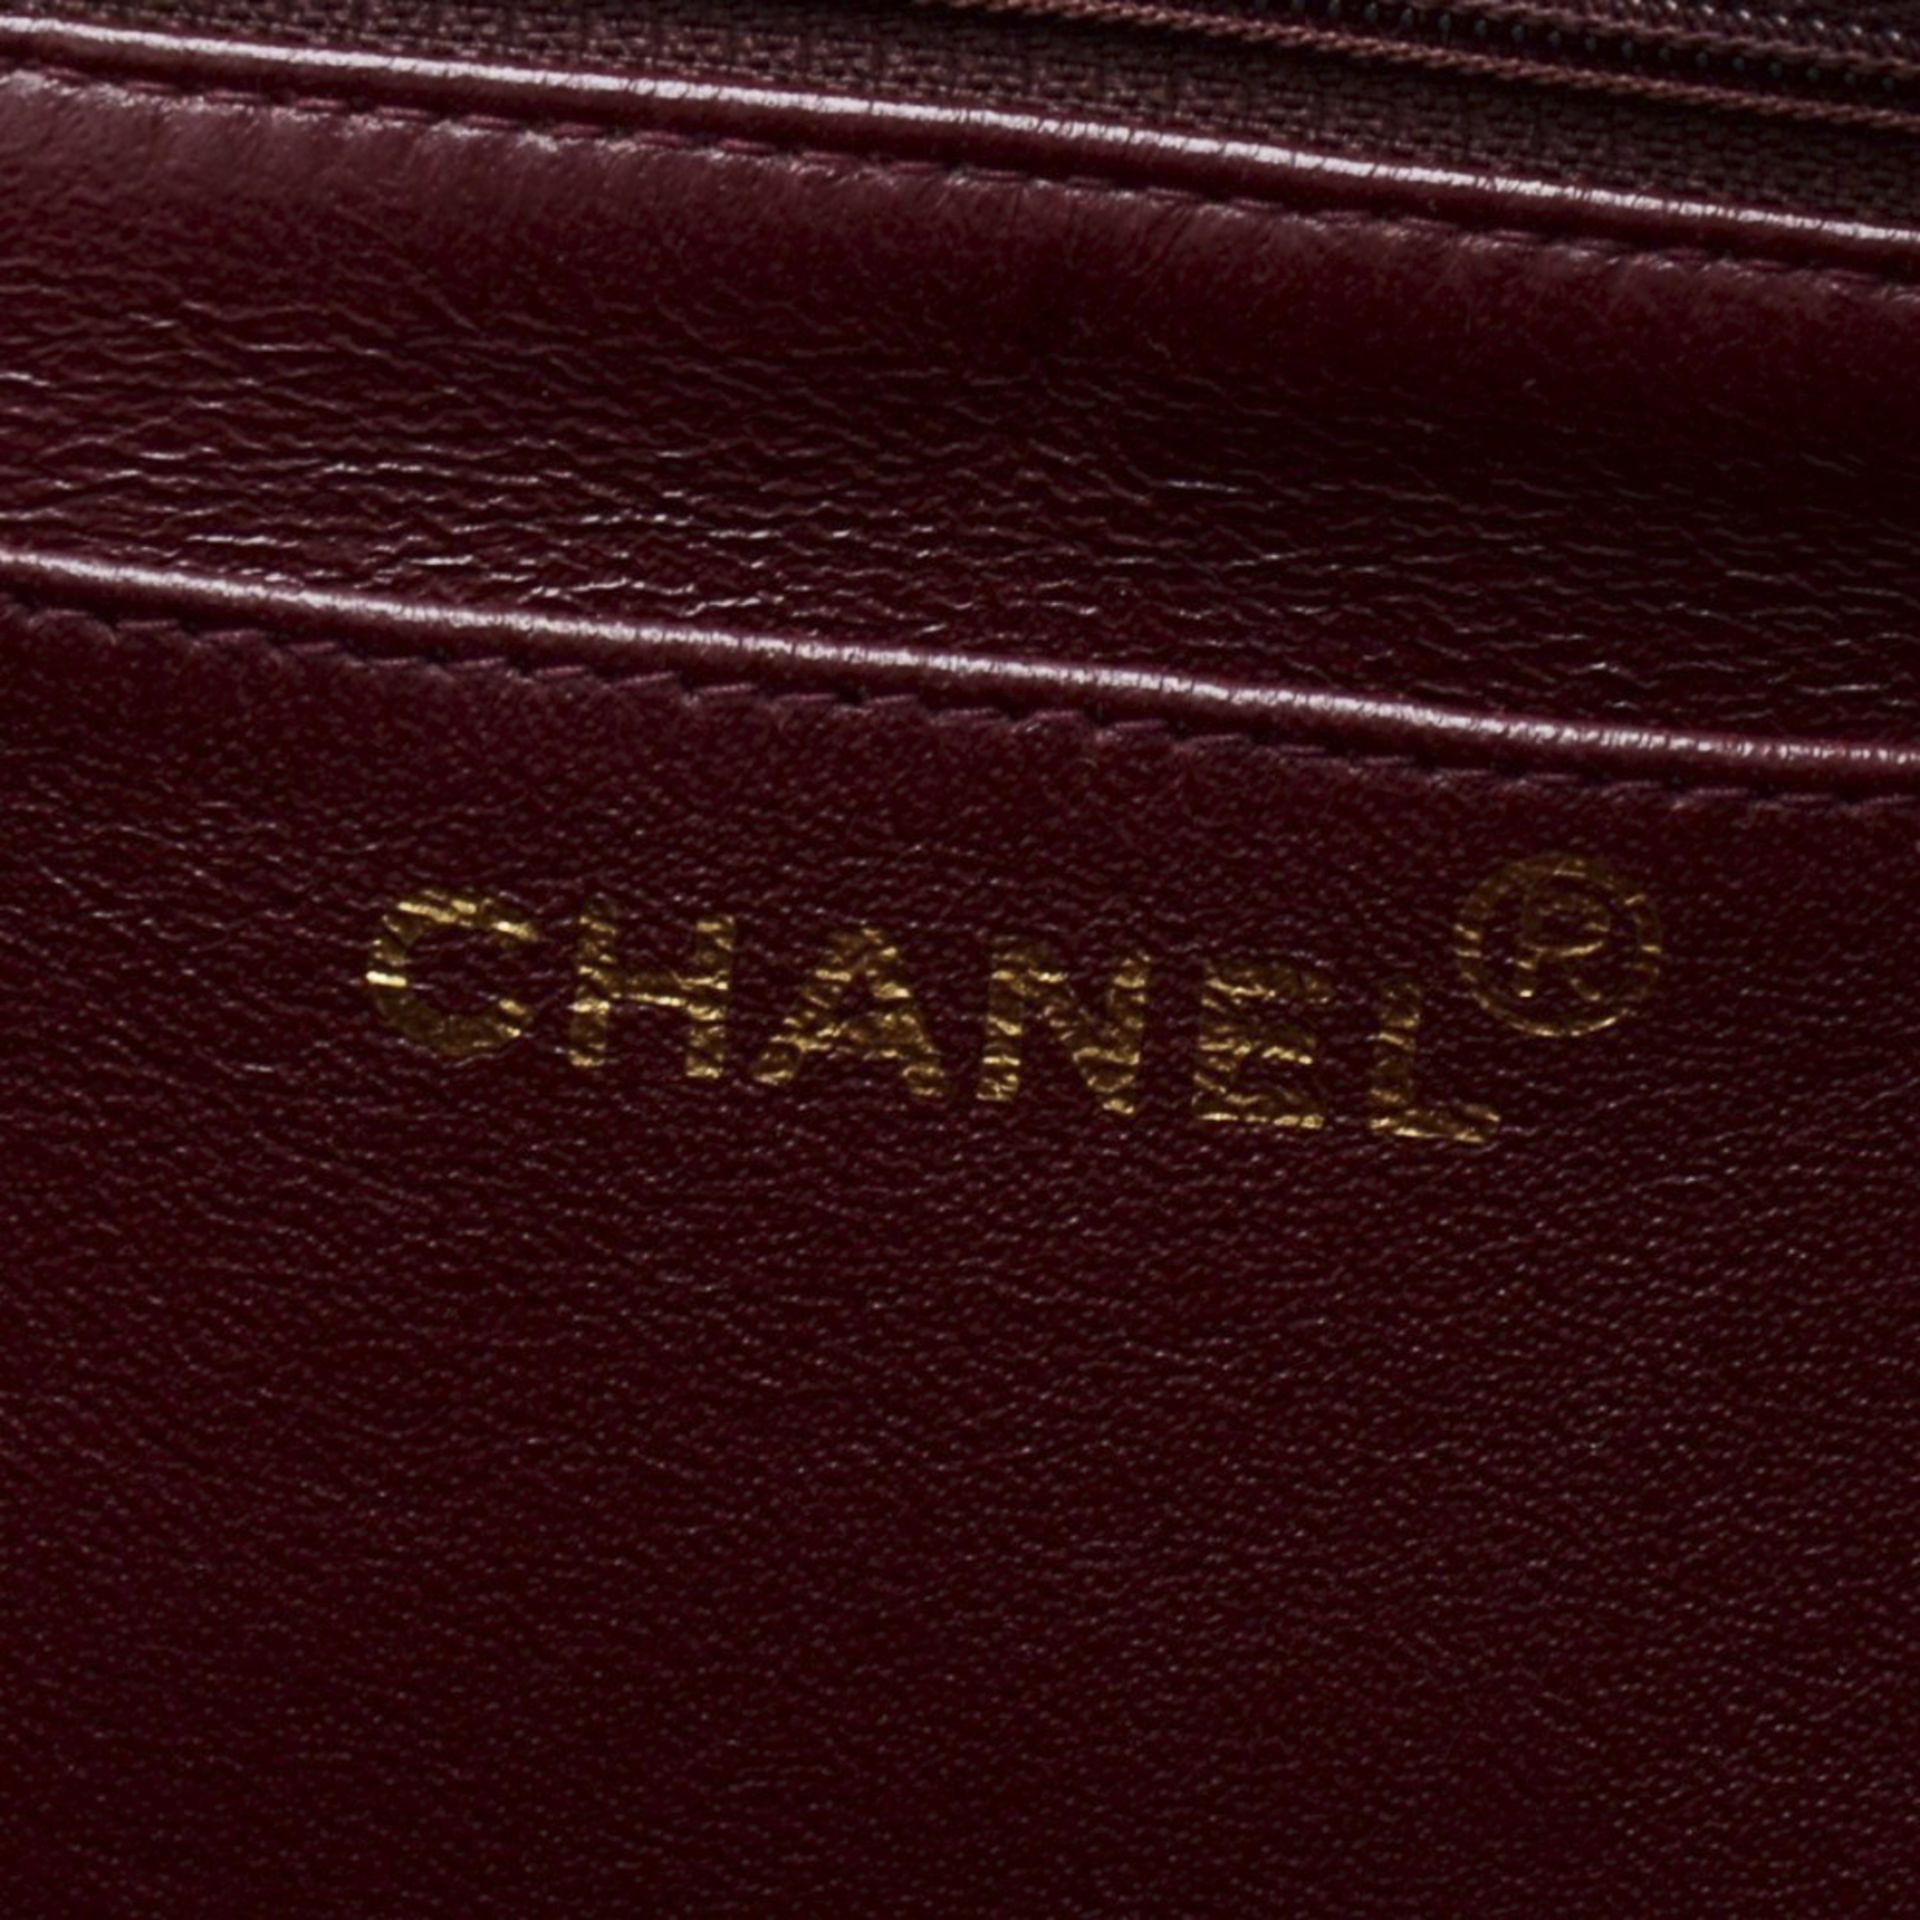 Chanel, Jumbo XL Flap Bag - Image 8 of 12